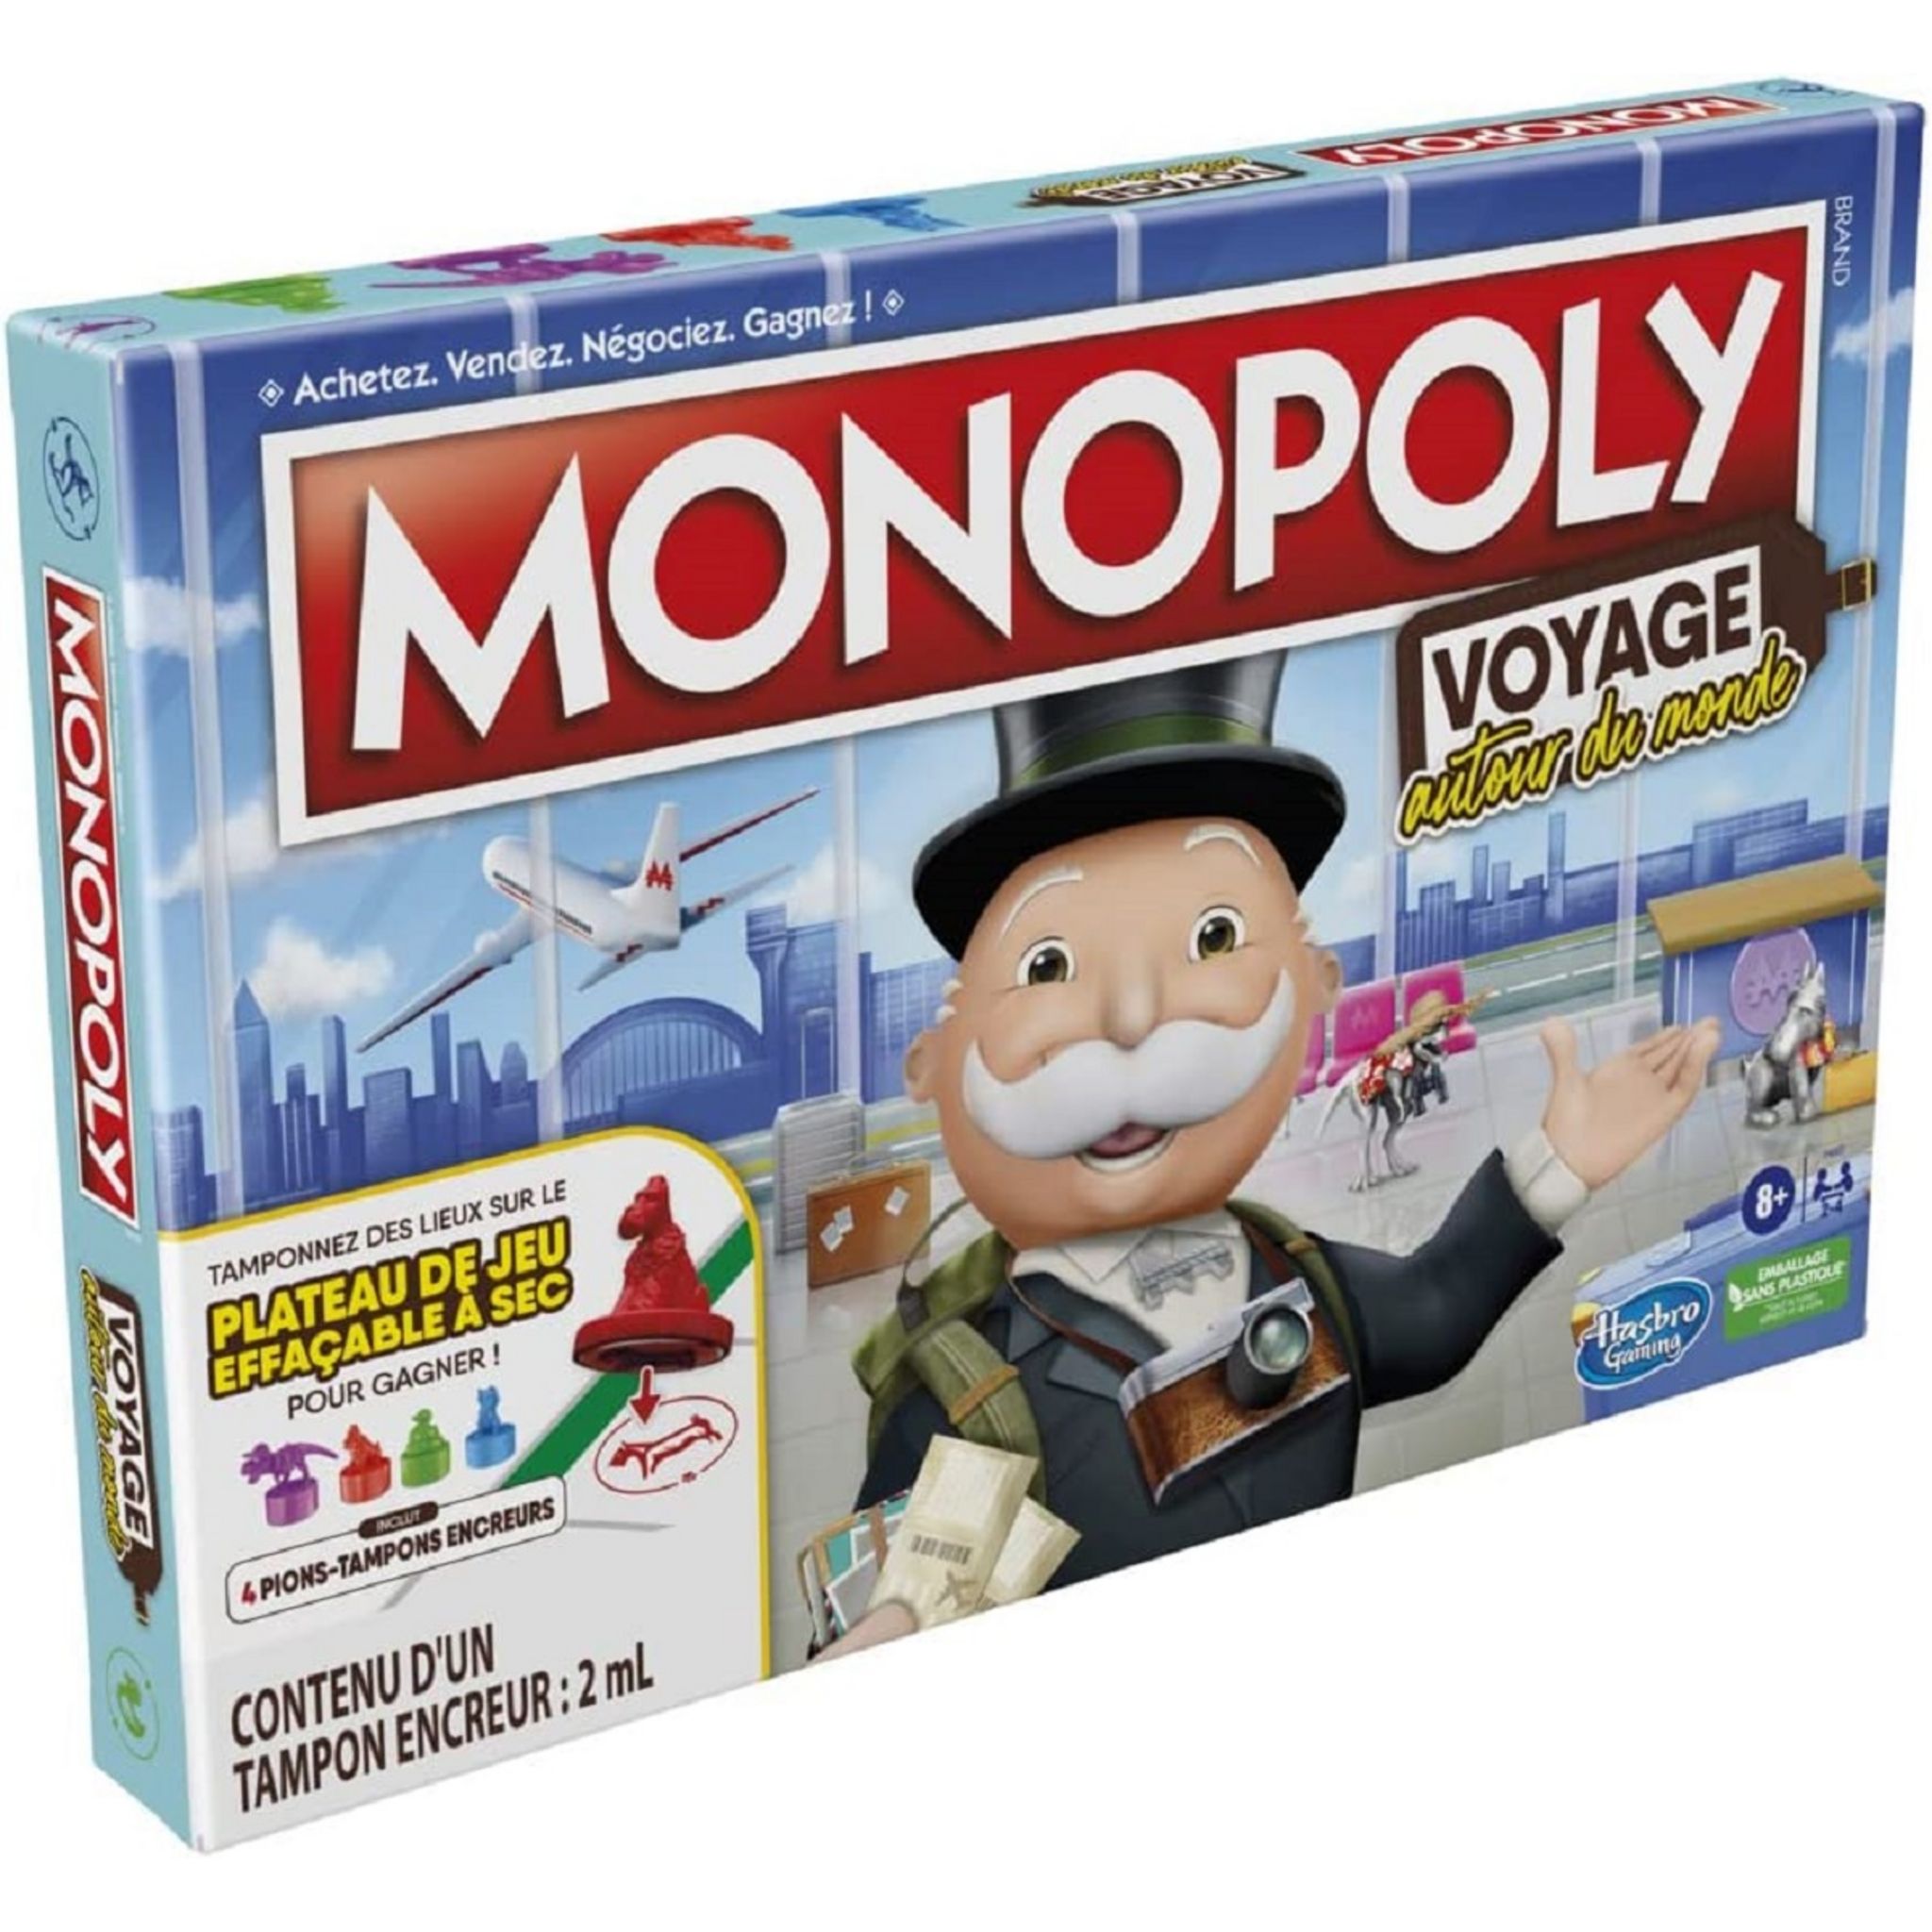 Jeu de société complet MONOPOLY Voyage (2009)